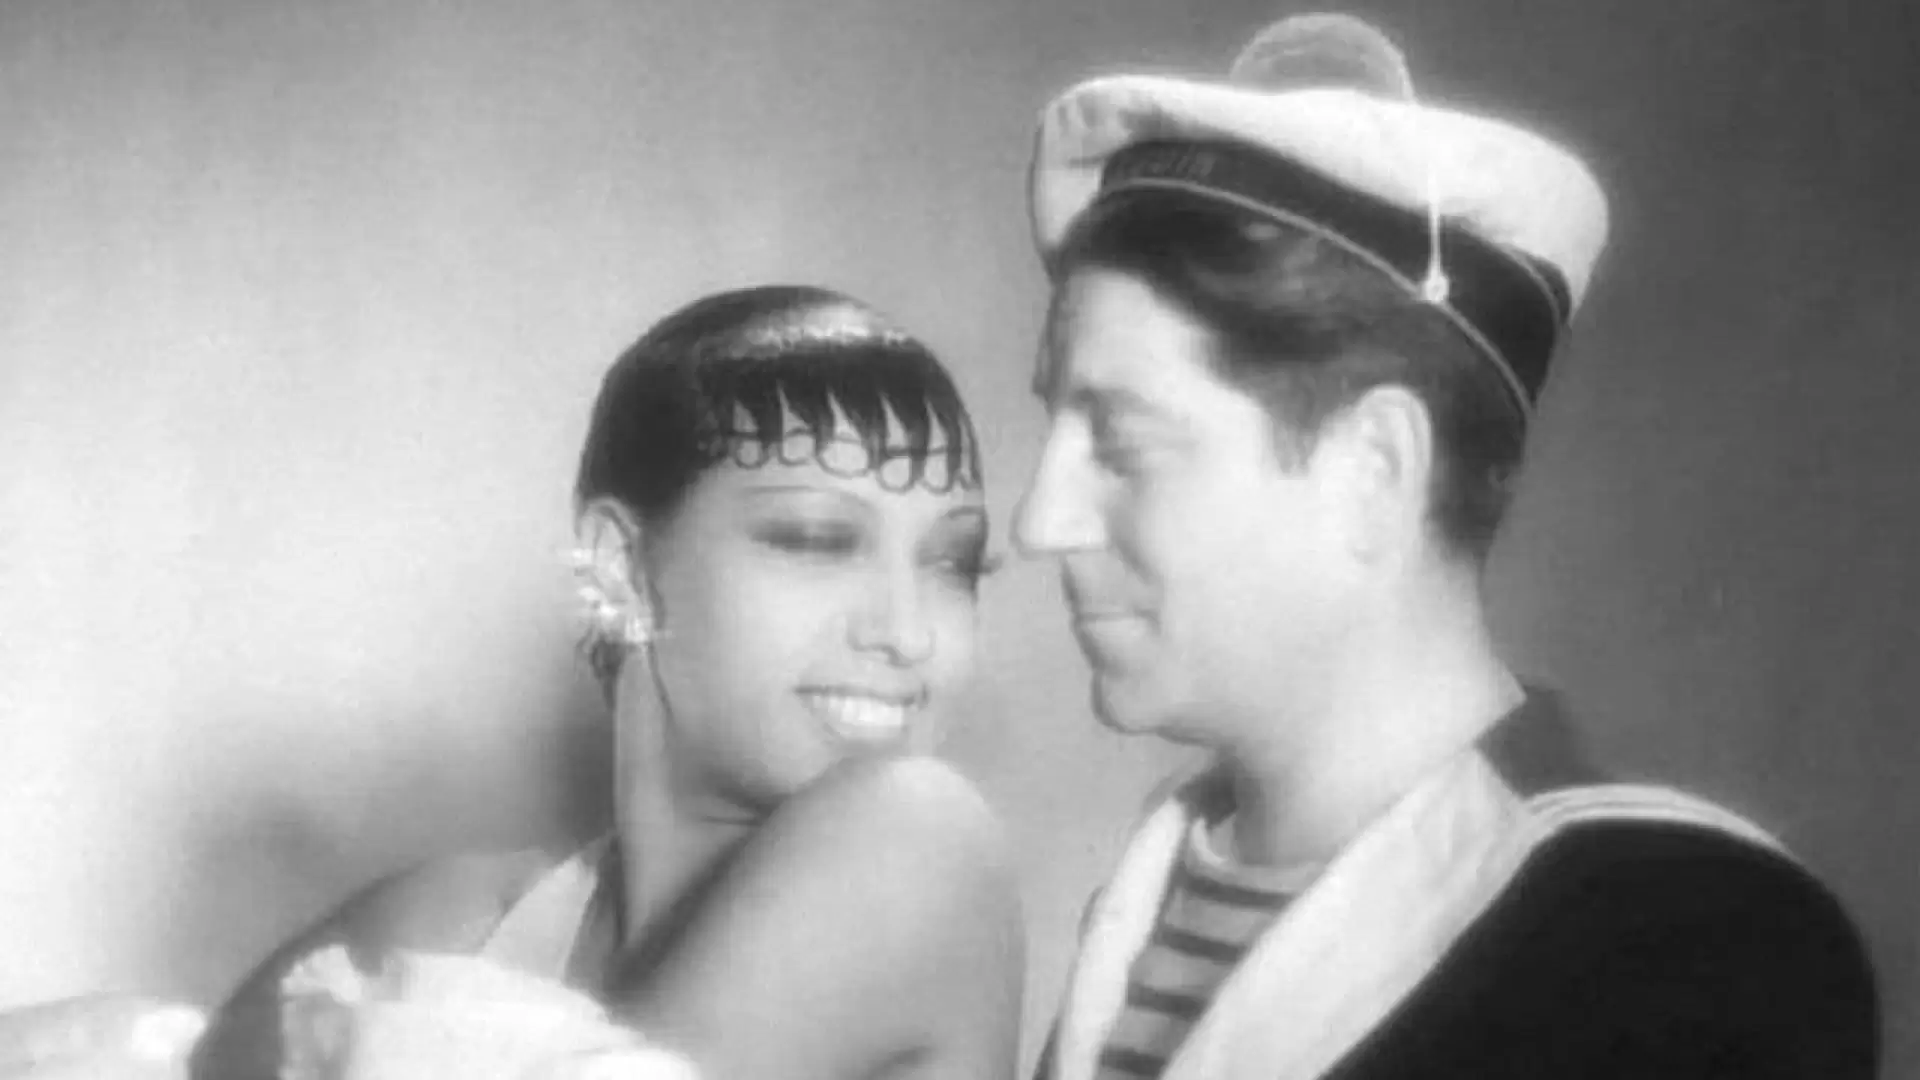 دانلود فیلم Zouzou 1934